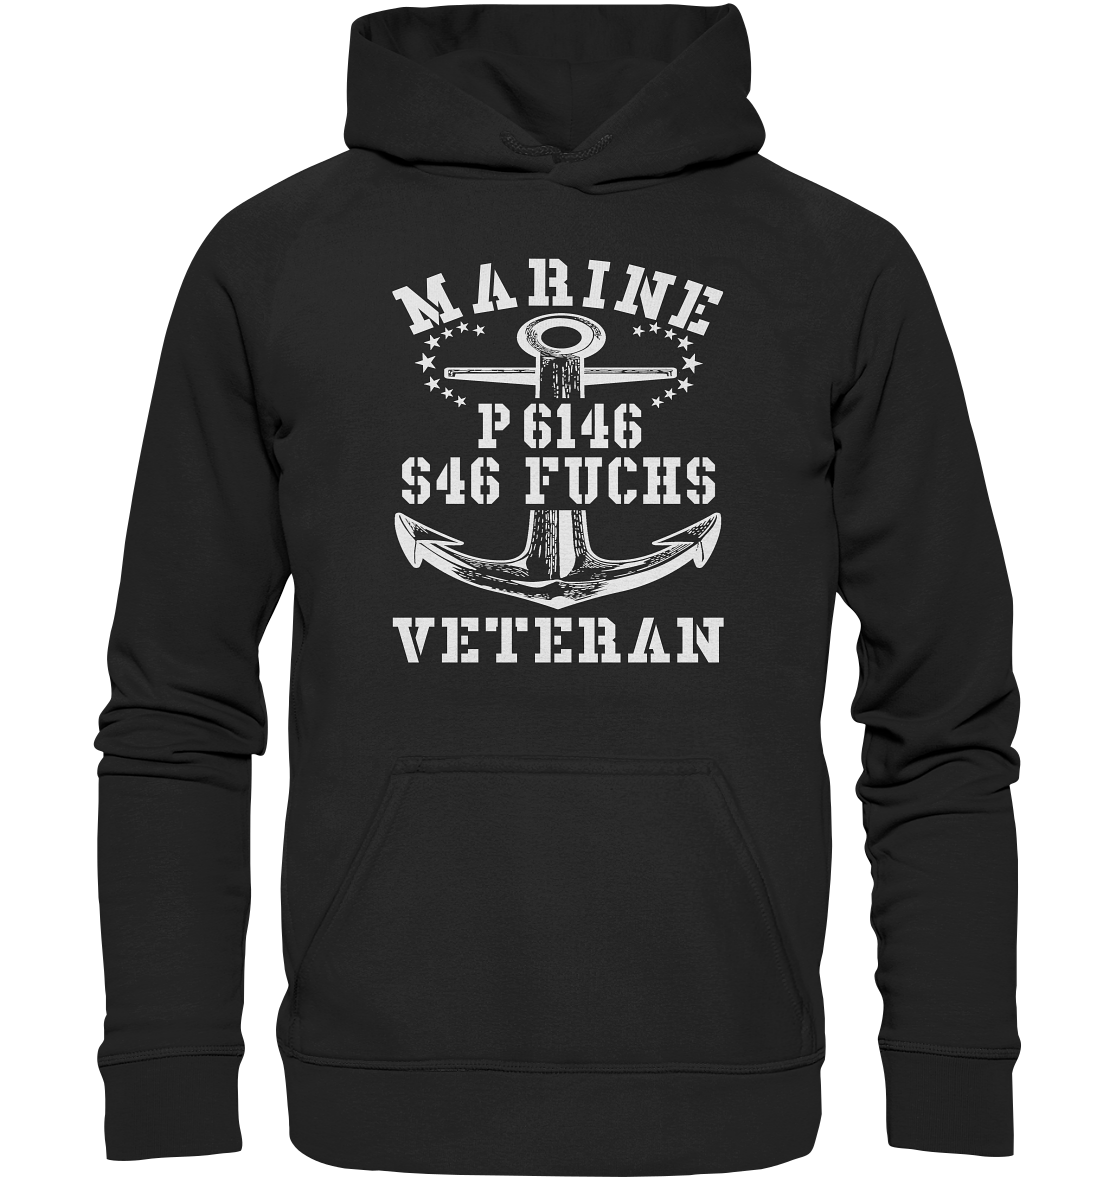 P6146 S46 FUCHS Marine Veteran - Basic Unisex Hoodie